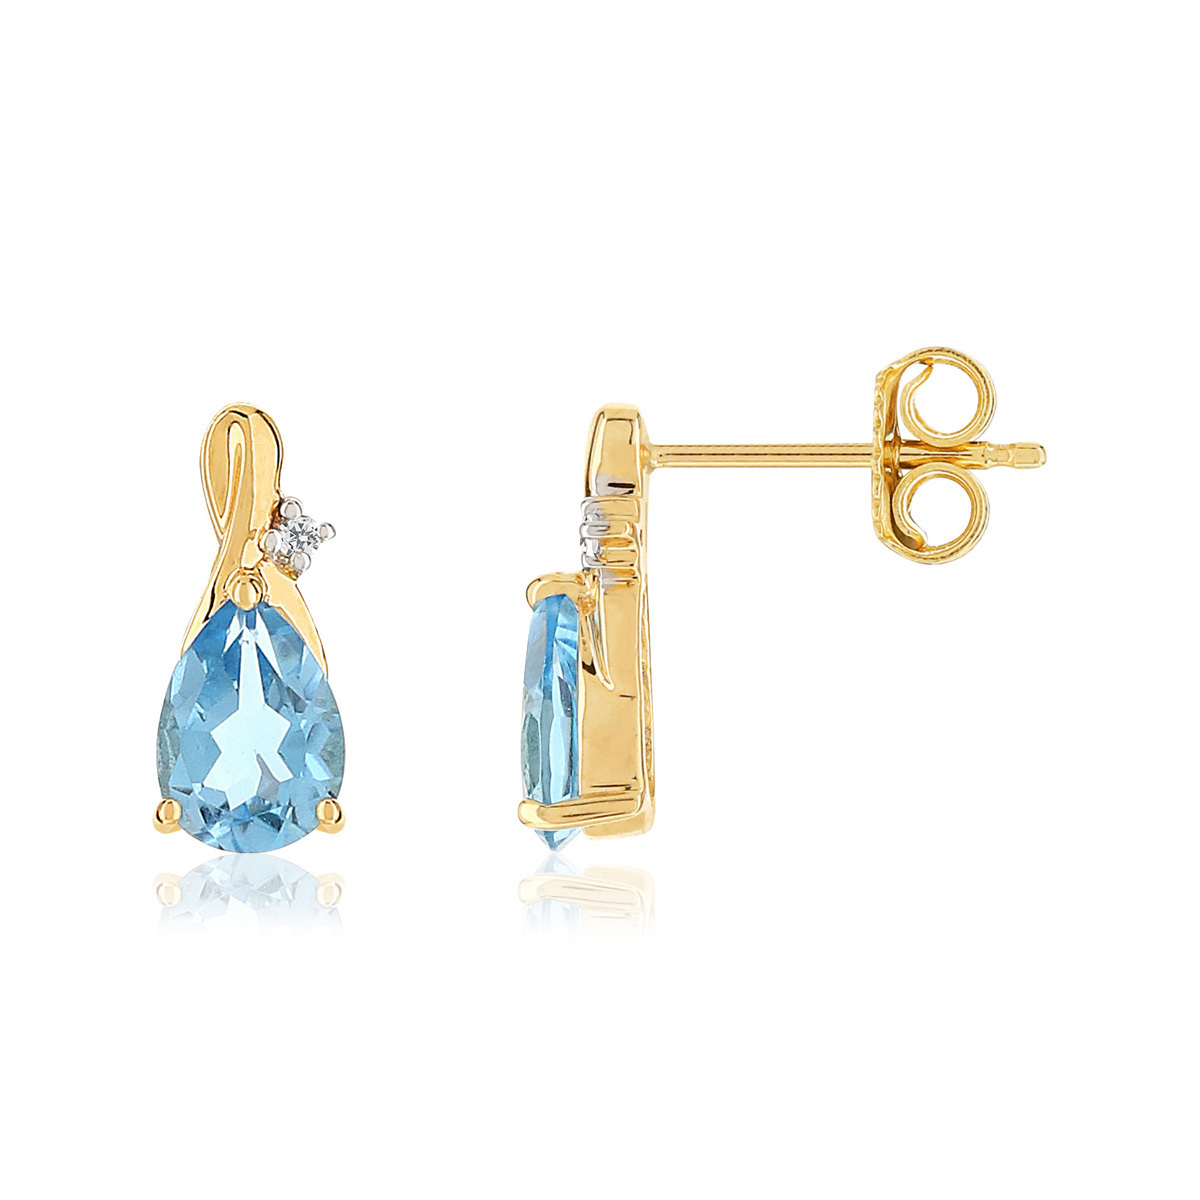 Boucles d'oreilles or jaune 375 topazes Swiss blue taille poire et diamants